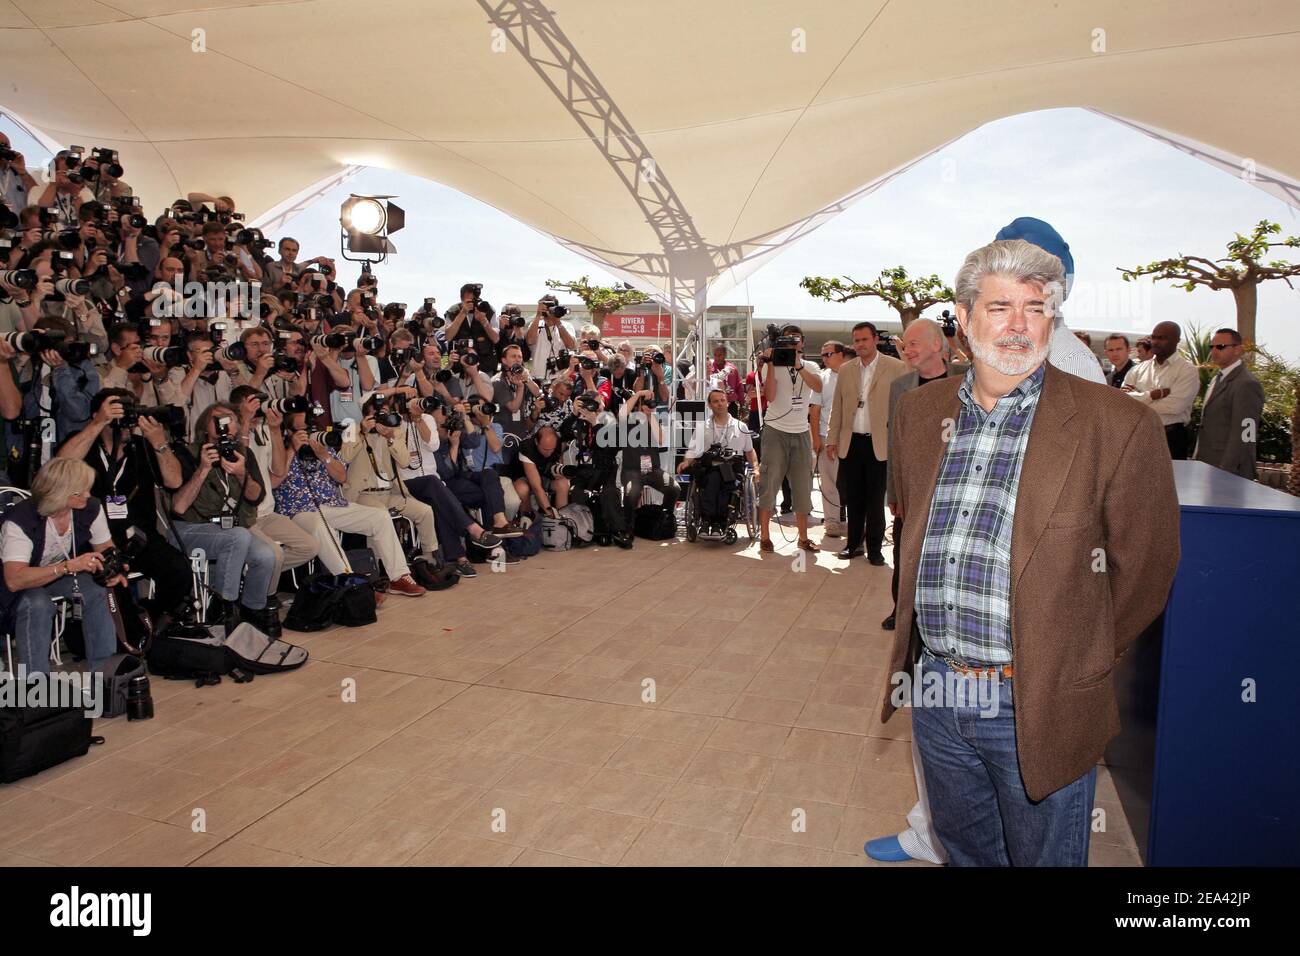 US-Regisseur George Lucas posiert bei einer Fotoaufnahme für seinen Film 'Star Wars Episode III : Revenge of the Sith' im Rahmen des Filmfestivals von Cannes 58th, am Freitag, 15. Mai 2005 in Cannes, Südfrankreich. Foto von Hahn-Nebinger-Klein/ABACA Stockfoto